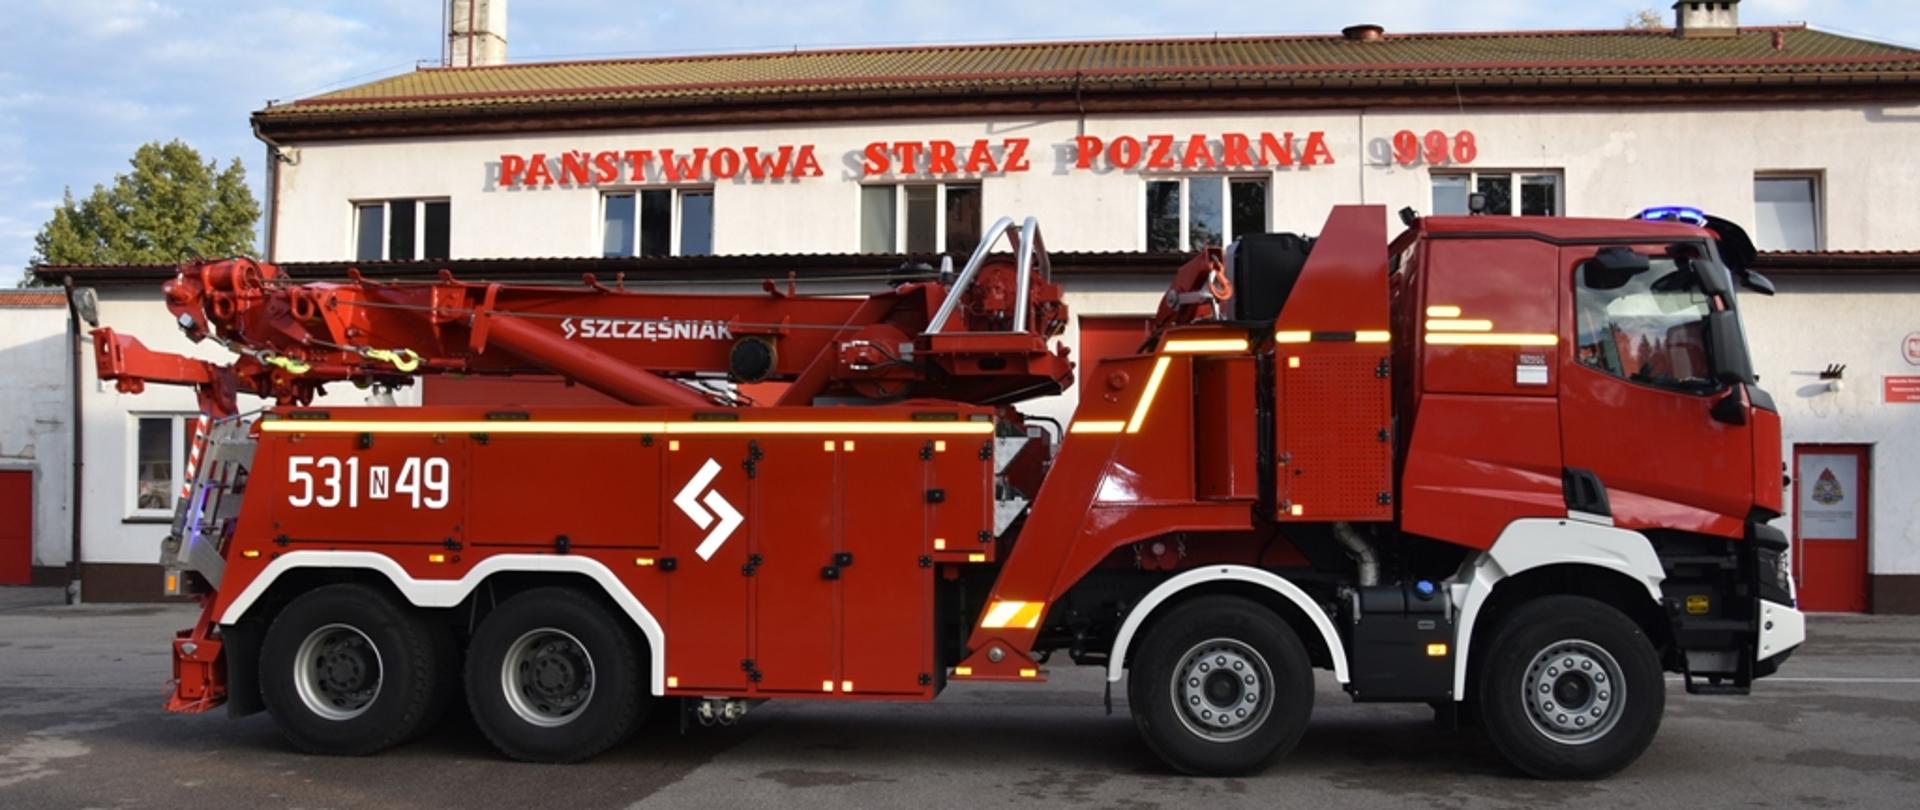 Ciężki samochód specjalny ratownictwa technicznego typu "rotator" stoi na placu ostródzkiej Komendy Powiatowej PSP